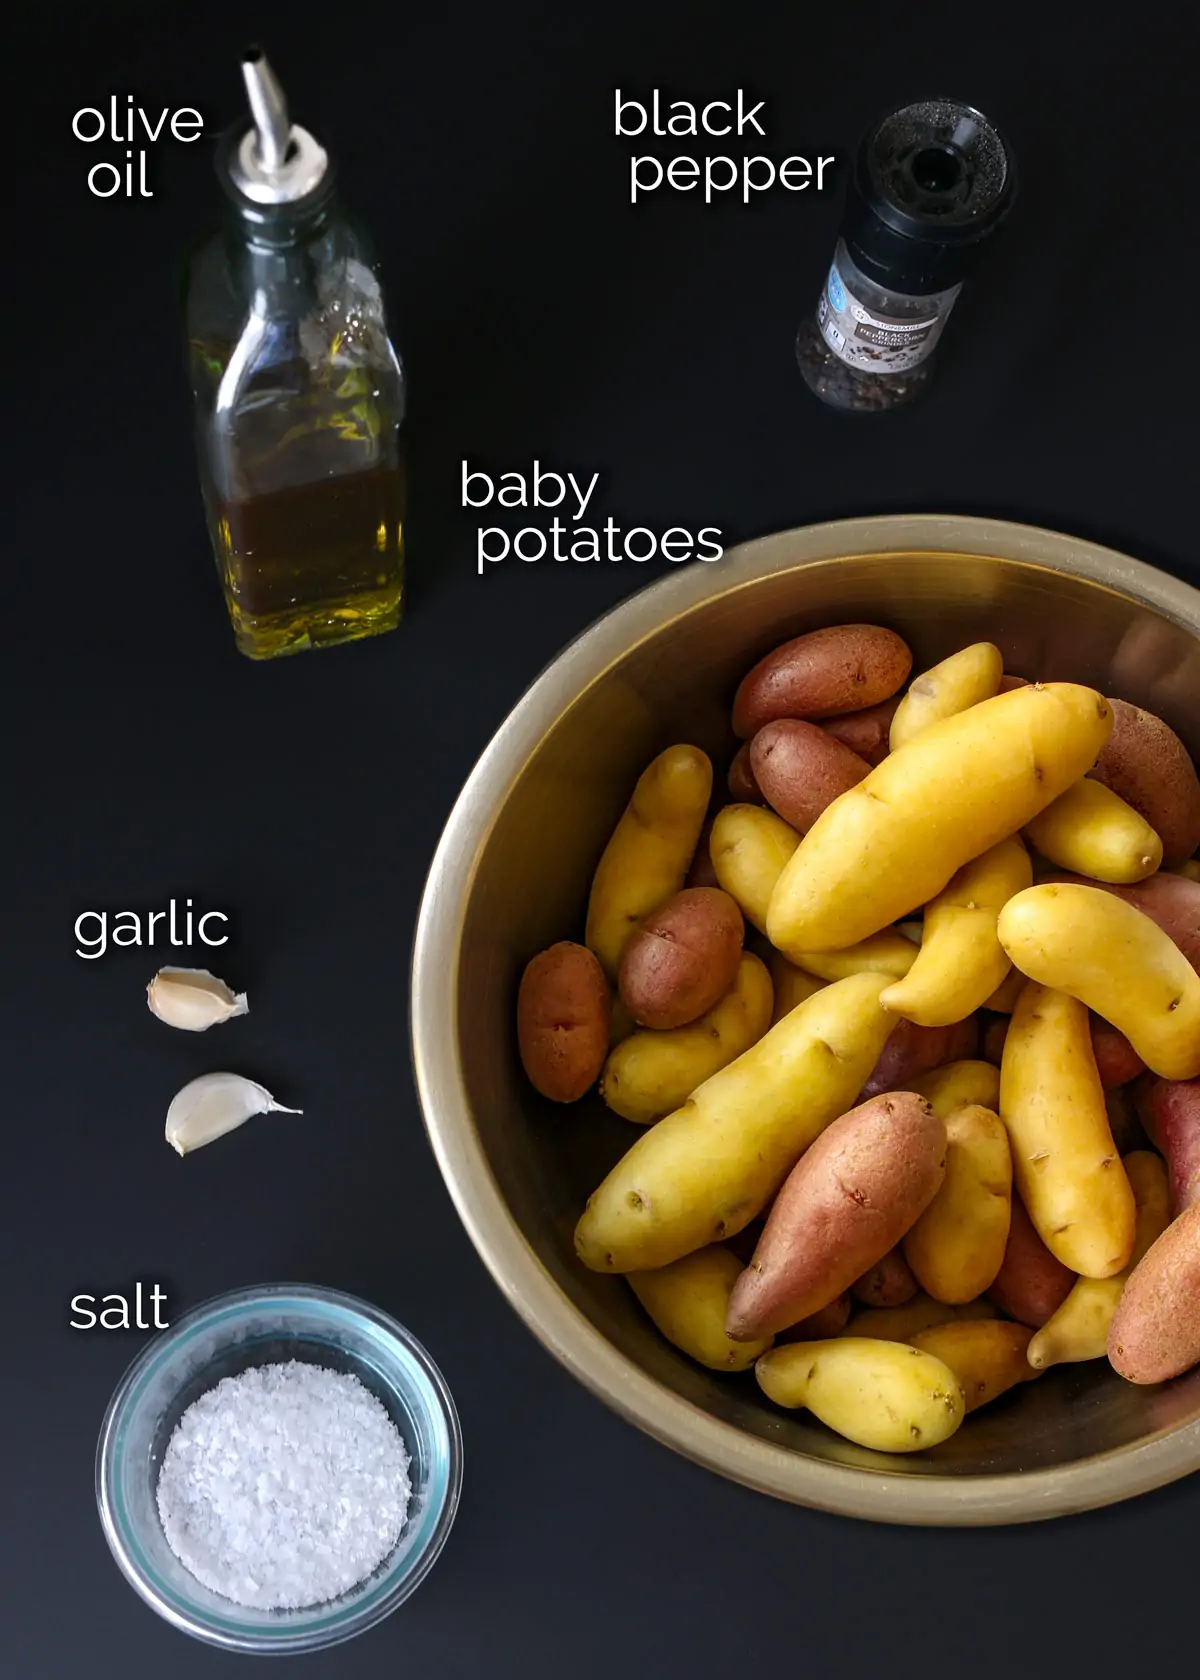 ингредиенты для приготовления медленного картофеля выложены на черном прилавке.